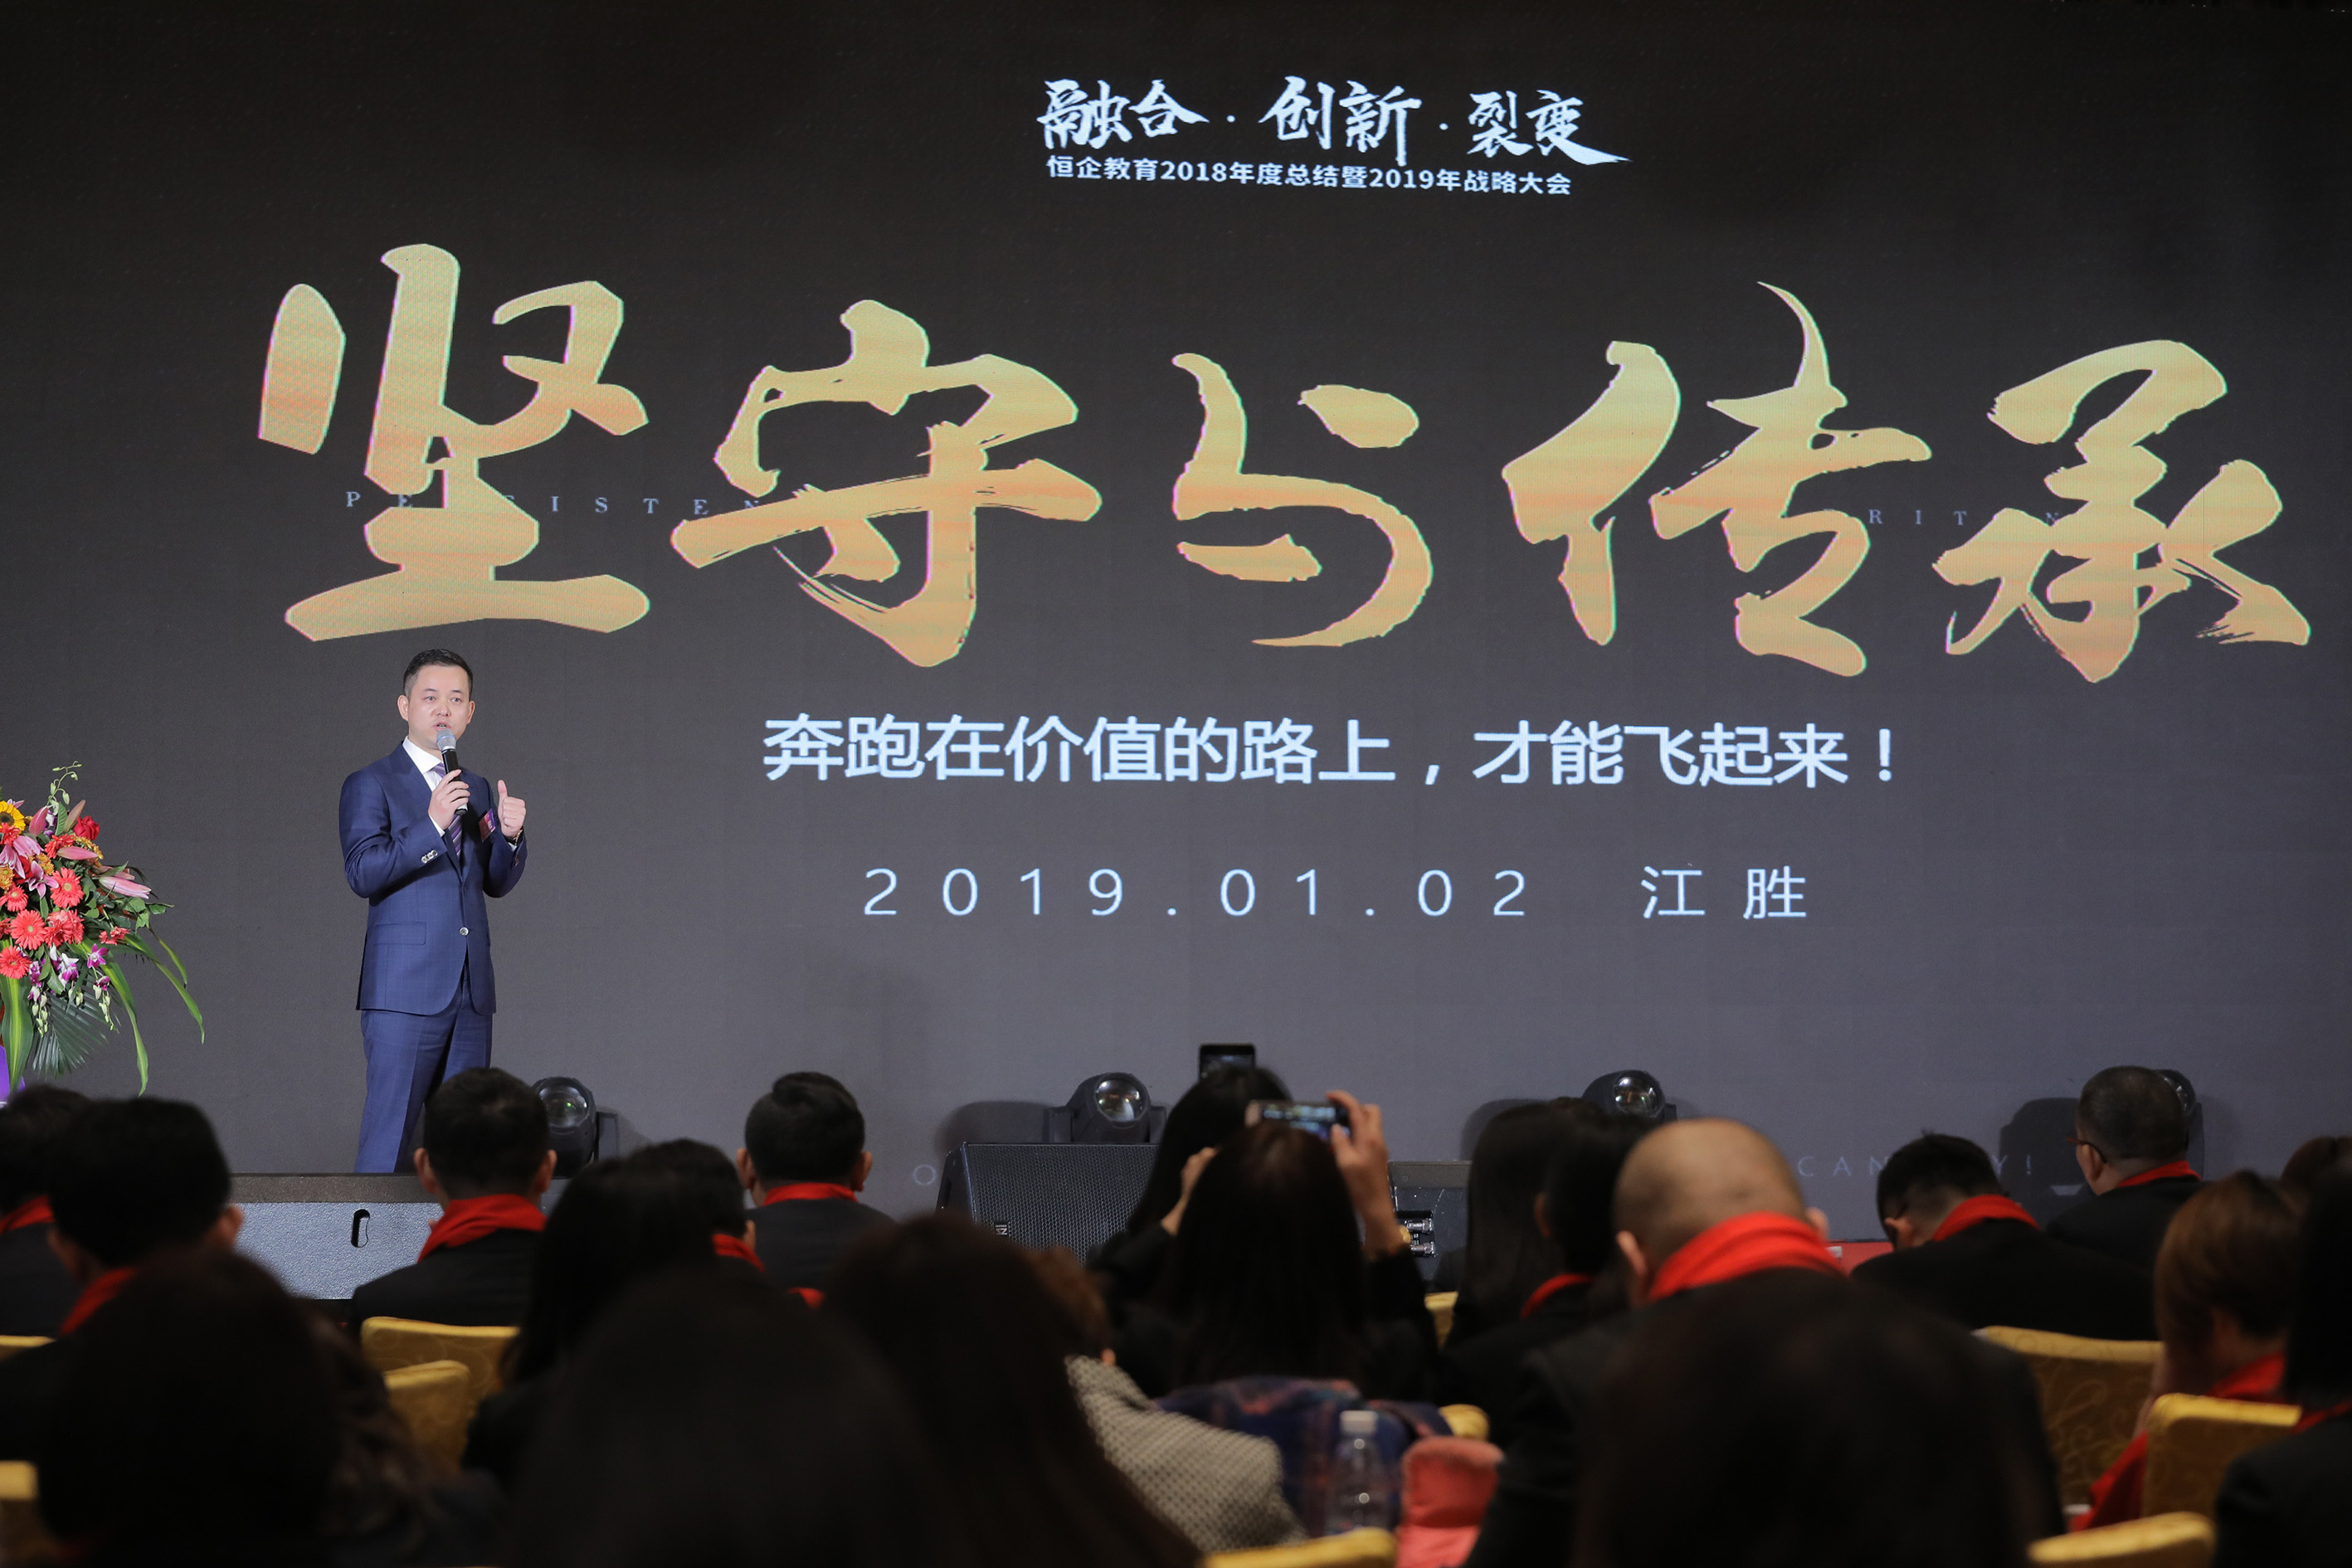 恒企教育联合创始人江胜先生发表《坚守与传承》主题演讲